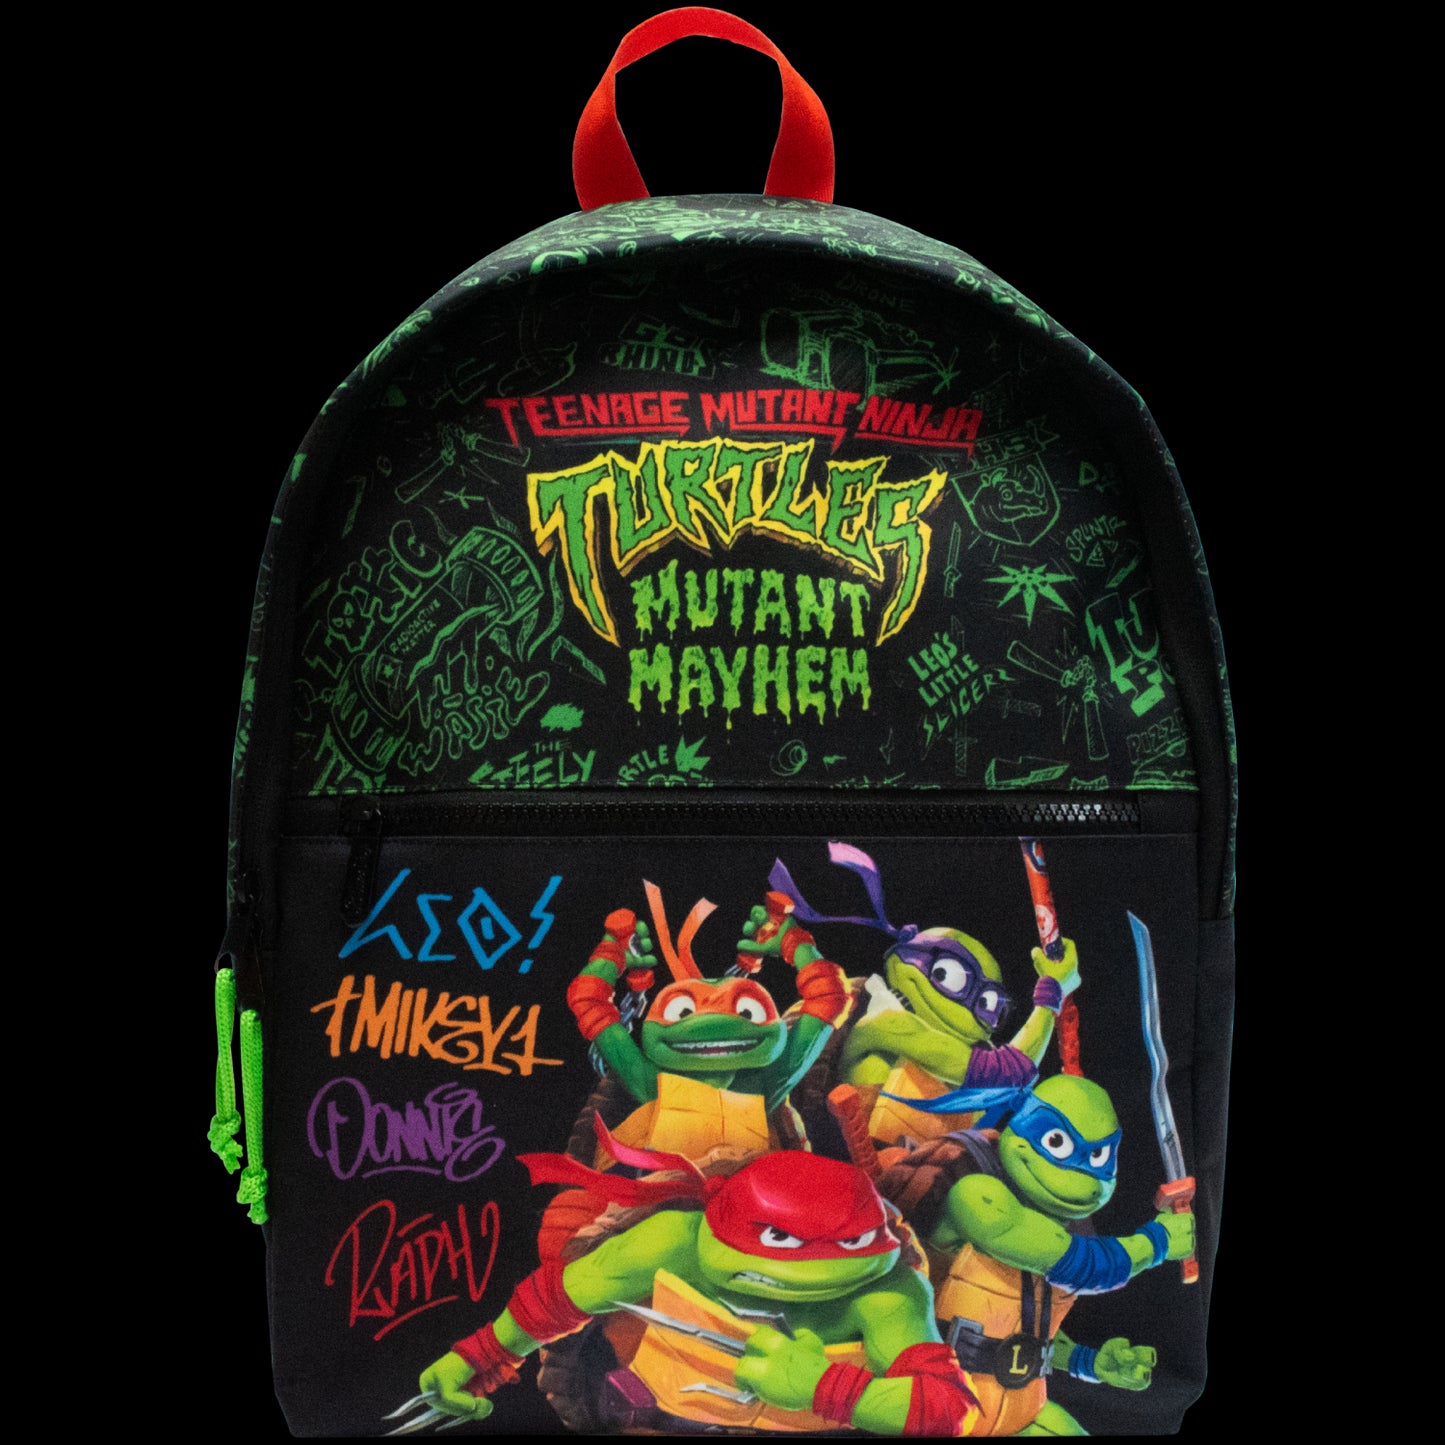 Teenage Mutant Ninja Turtles Mutant Mayhem Backpack